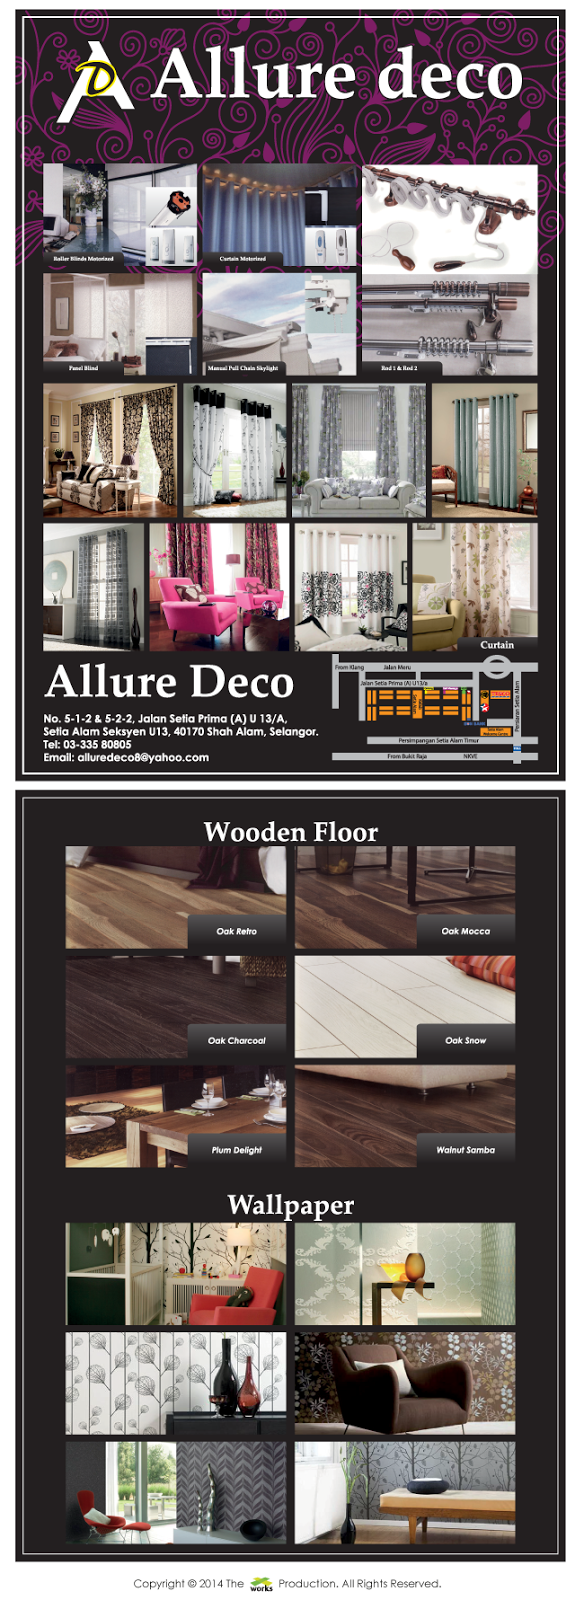 allure deco, wallpaper, wooden floor